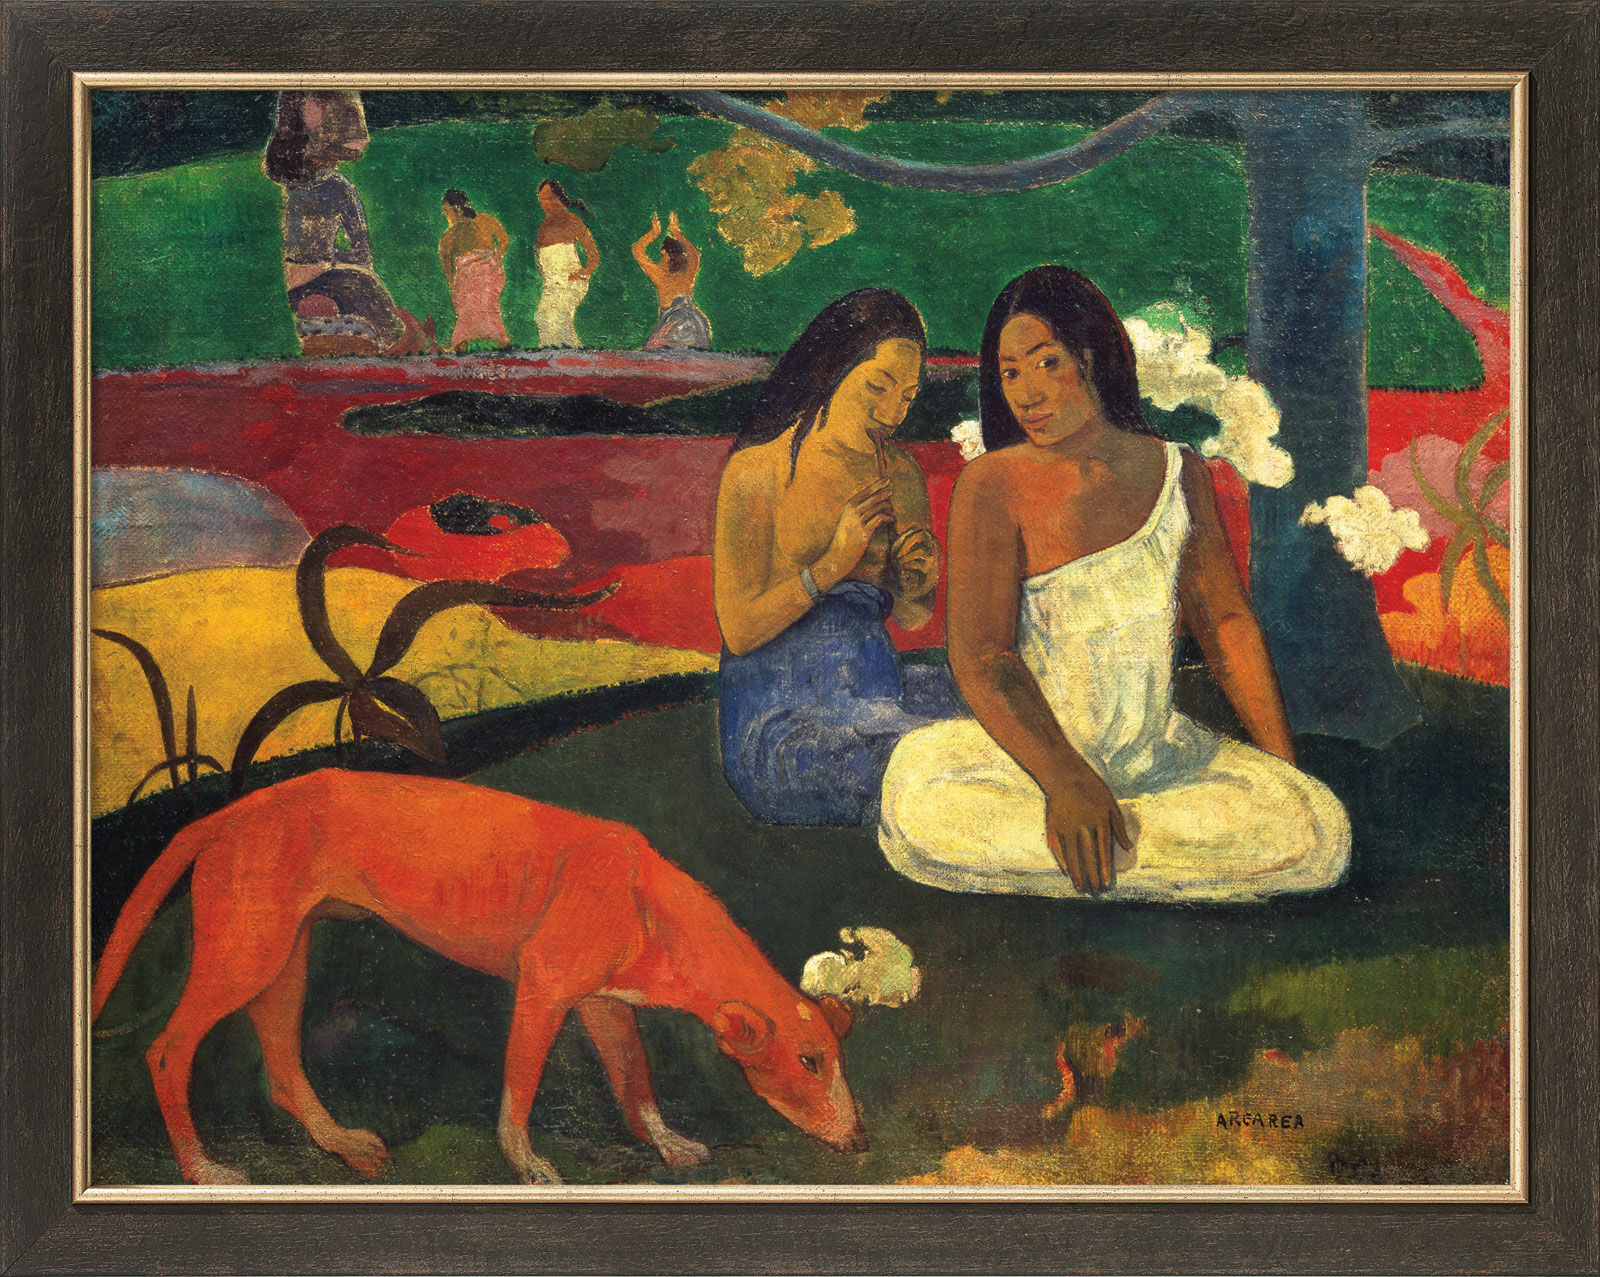 Bild "Arearea" (1892), gerahmt von Paul Gauguin